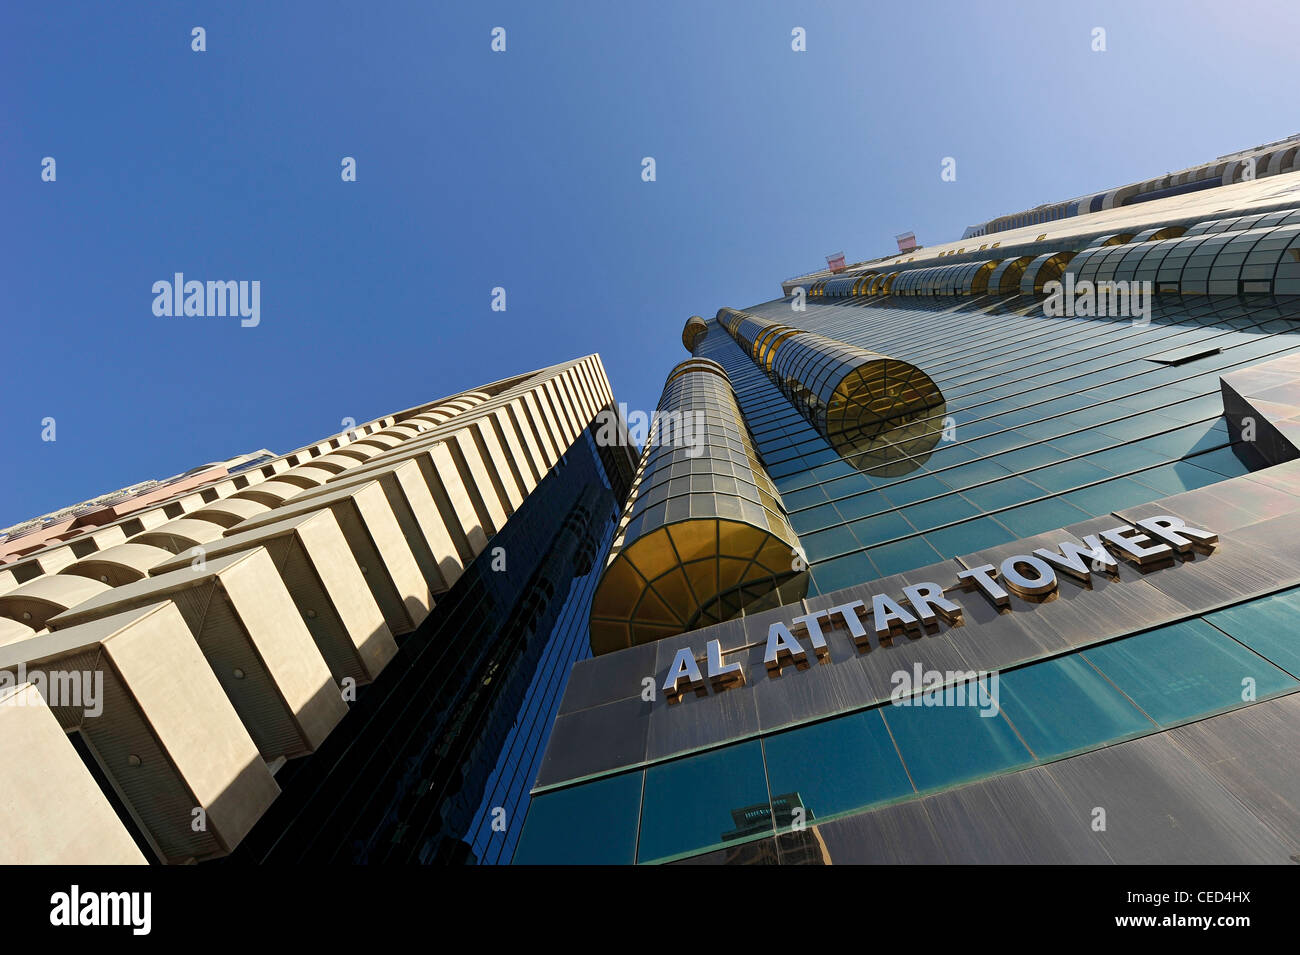 Al Attar Tower, gratte-ciel, l'architecture moderne, du quartier financier, Dubaï, Émirats arabes unis, Moyen Orient Banque D'Images